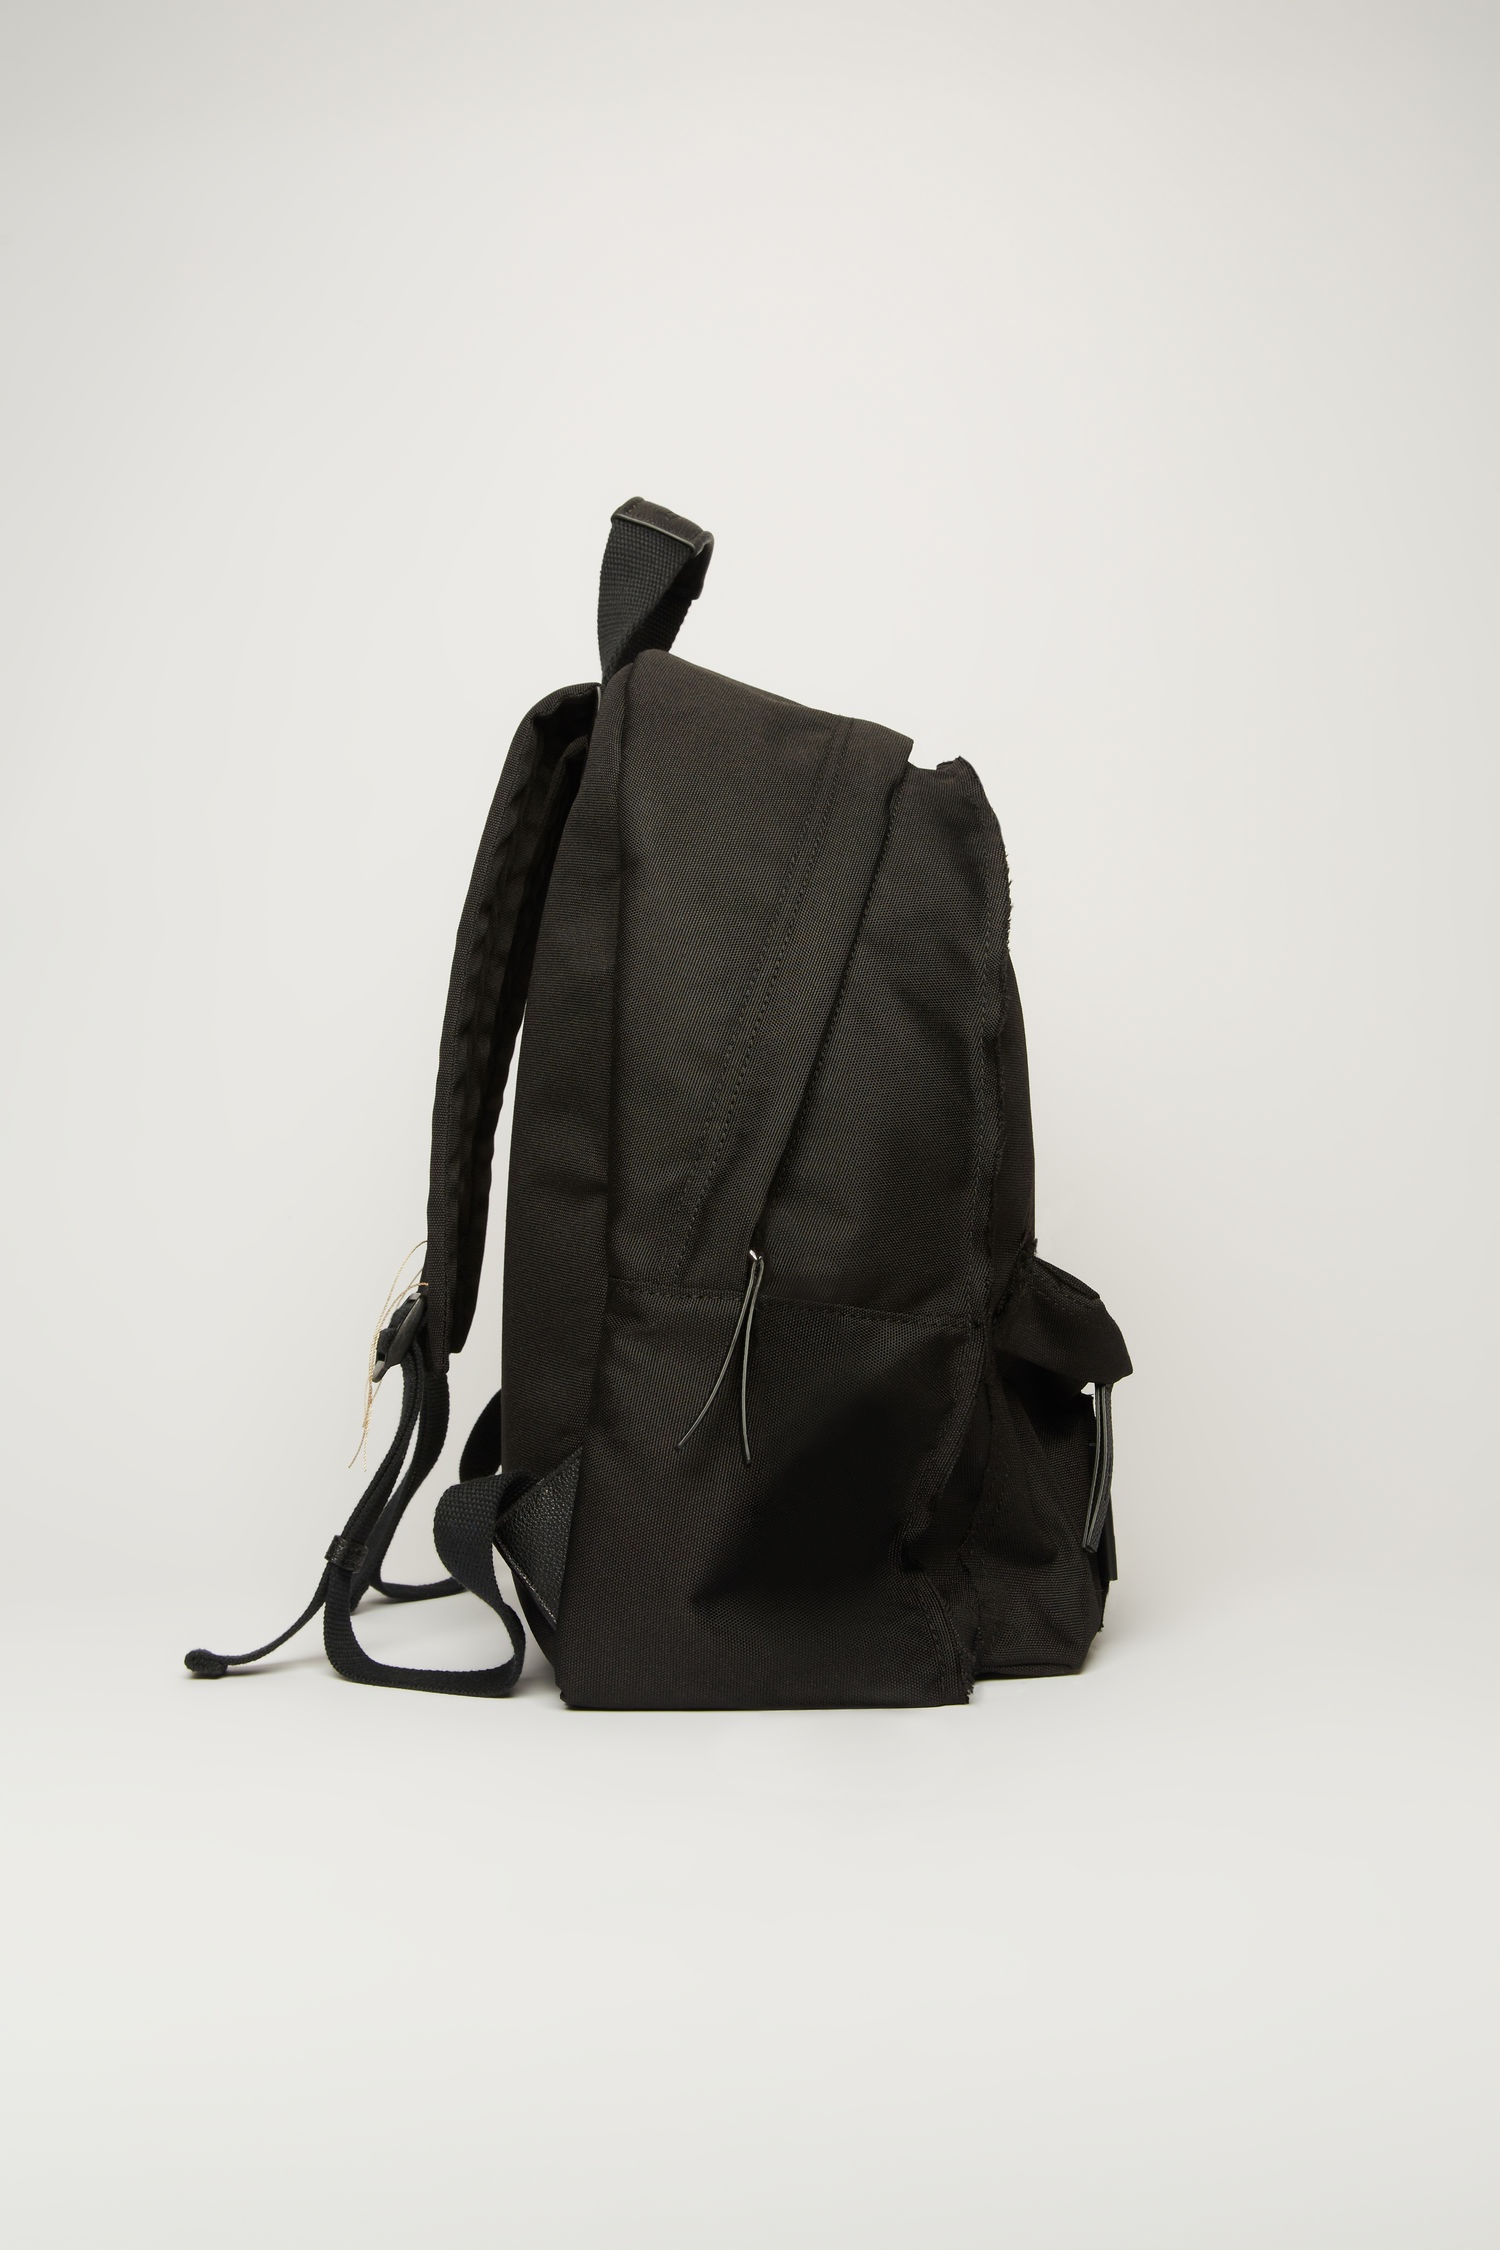 Backpack black - 2